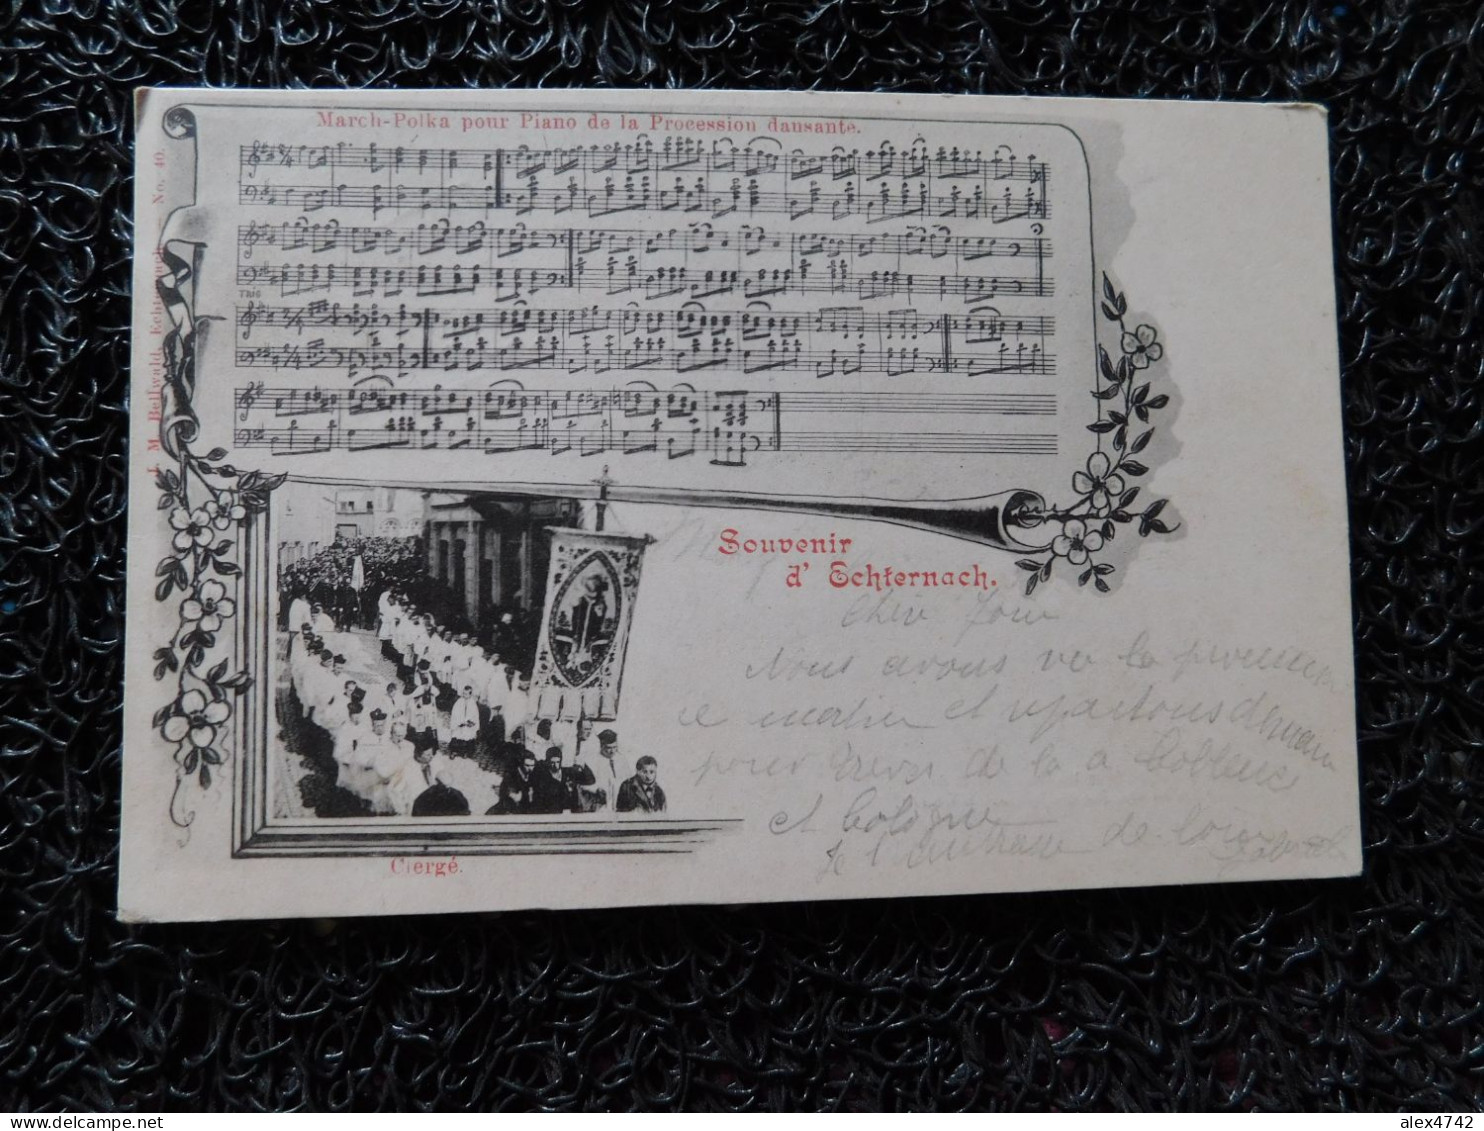 Souvenir D'Echternach, Le Clergé, March-Polka Pour Piano De La Procession Dansante, 1901 (Y20) - Echternach